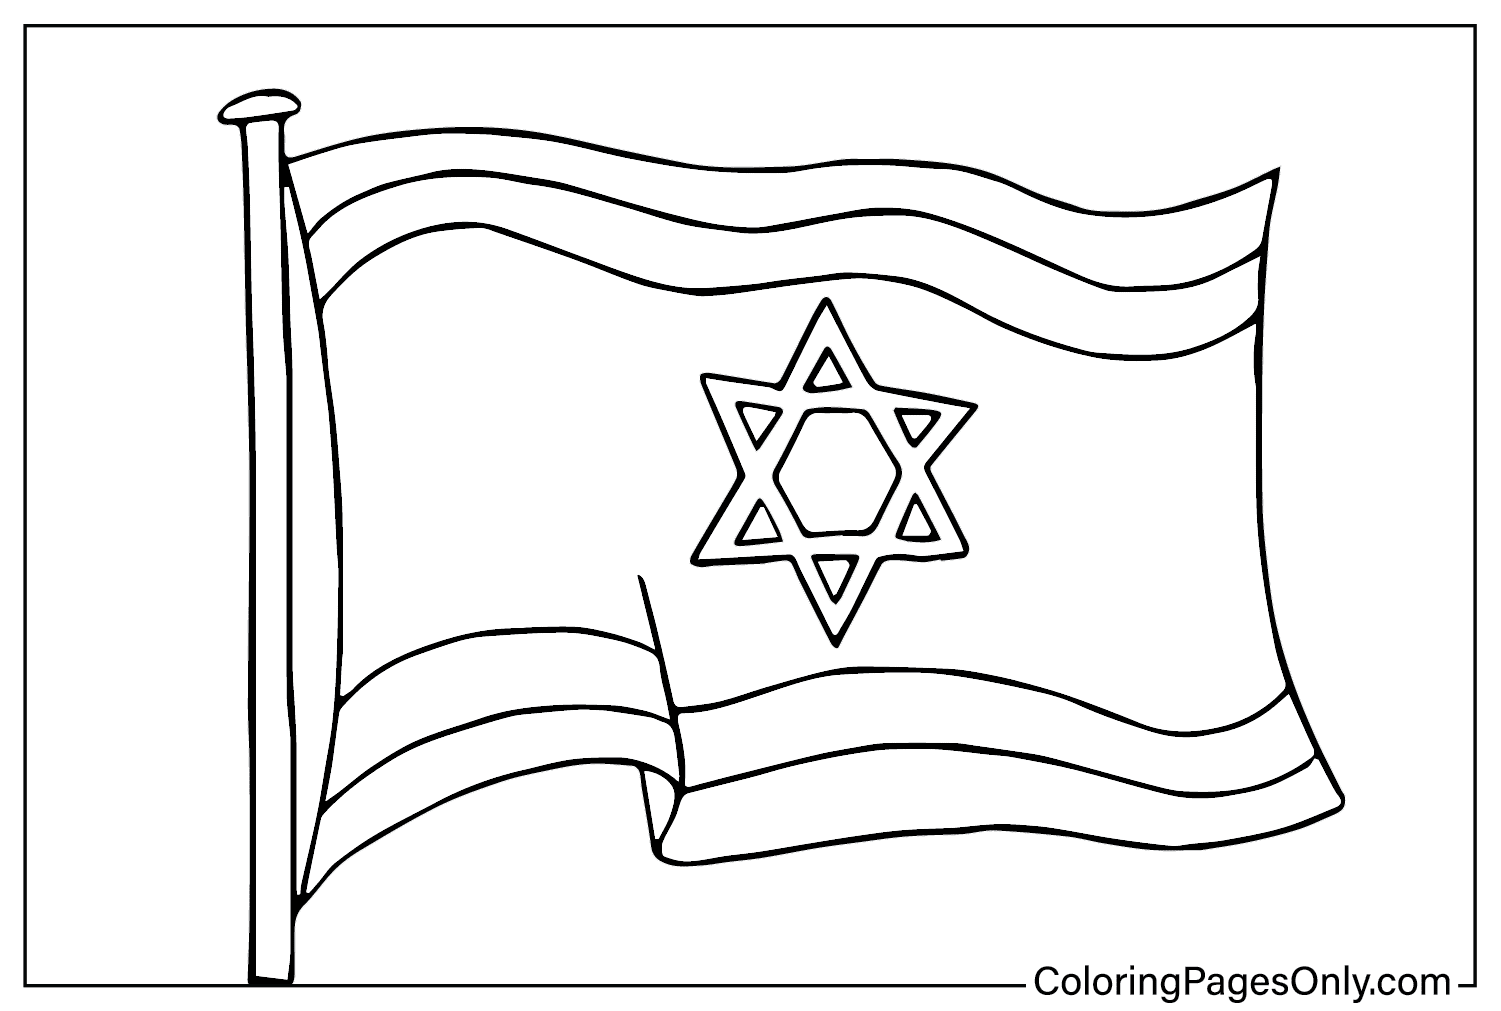 Раскраска флага Израиля из Израиля